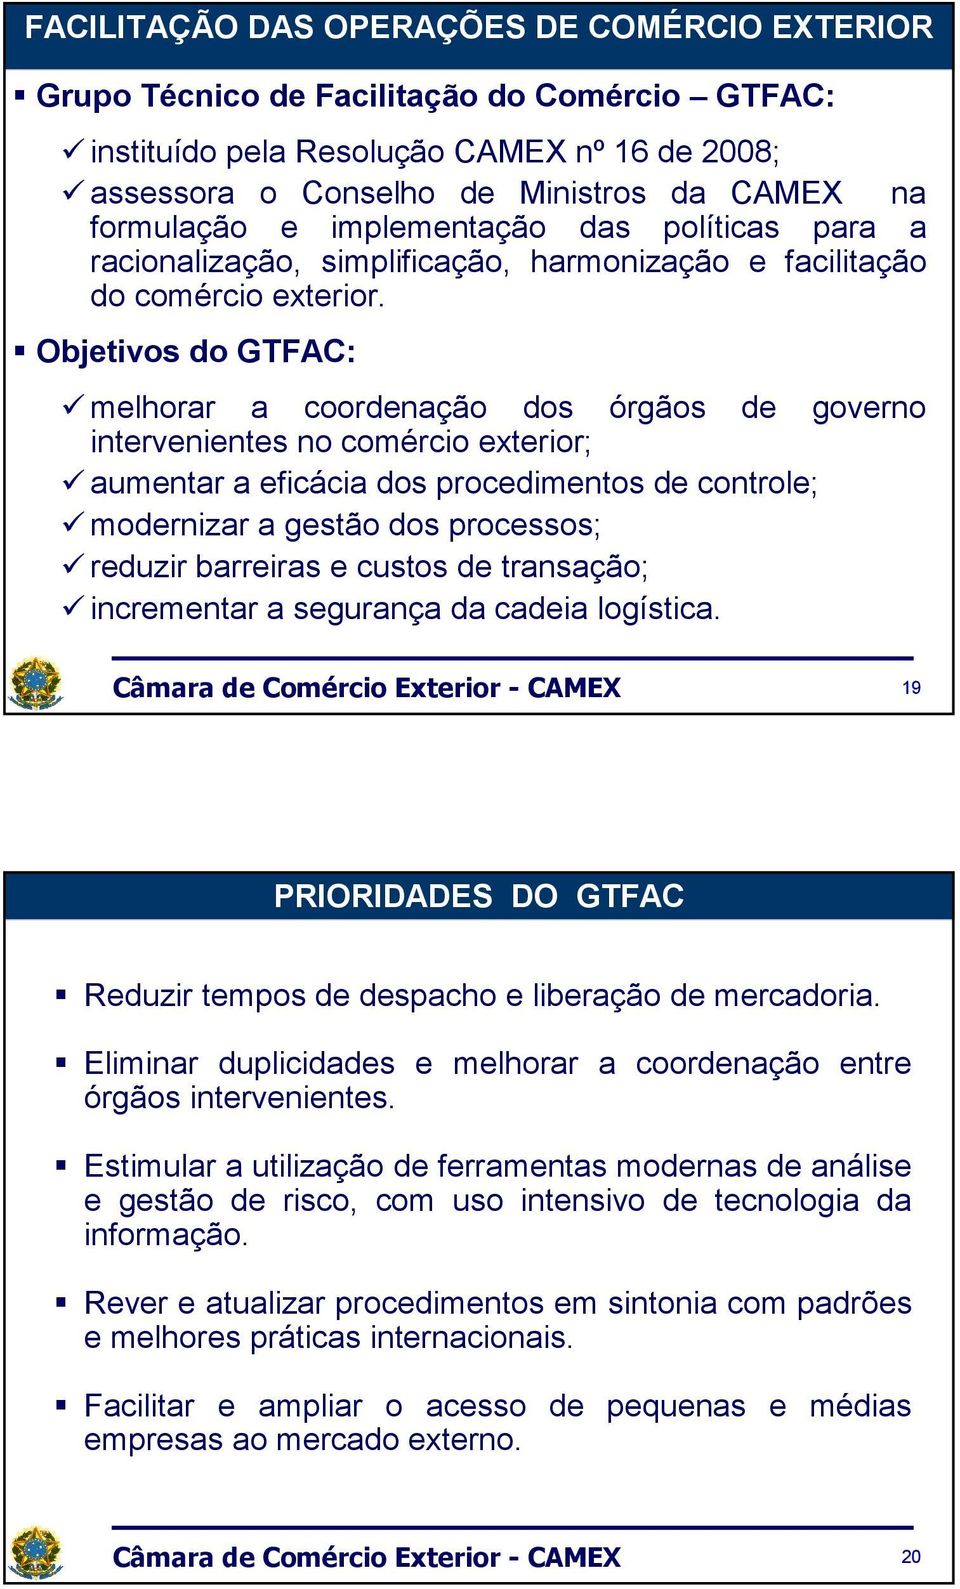 Objetivos do GTFAC: melhorar a coordenação dos órgãos de governo intervenientes no comércio exterior; aumentar a eficácia dos procedimentos de controle; modernizar a gestão dos processos; reduzir